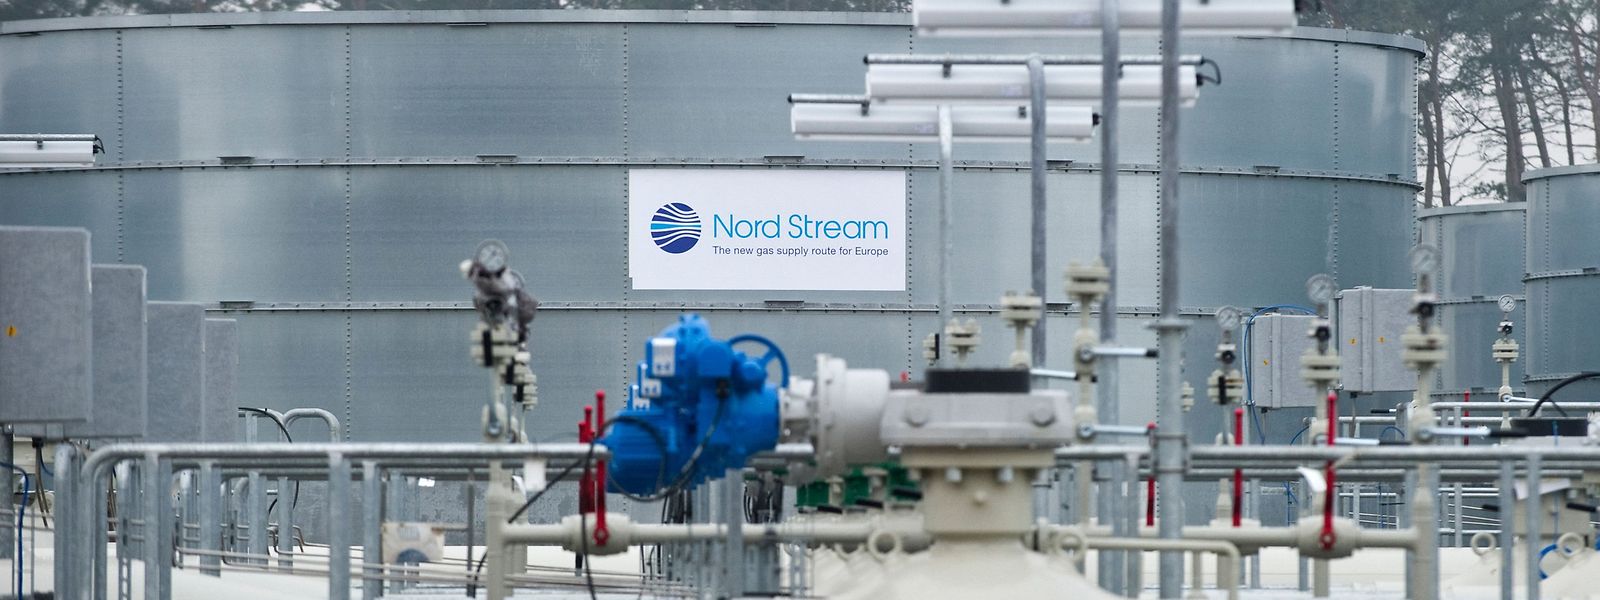 Bei der Ostseepipeline Nord Stream 1 soll erneut vorübergehend der Hahn zugedreht werden.